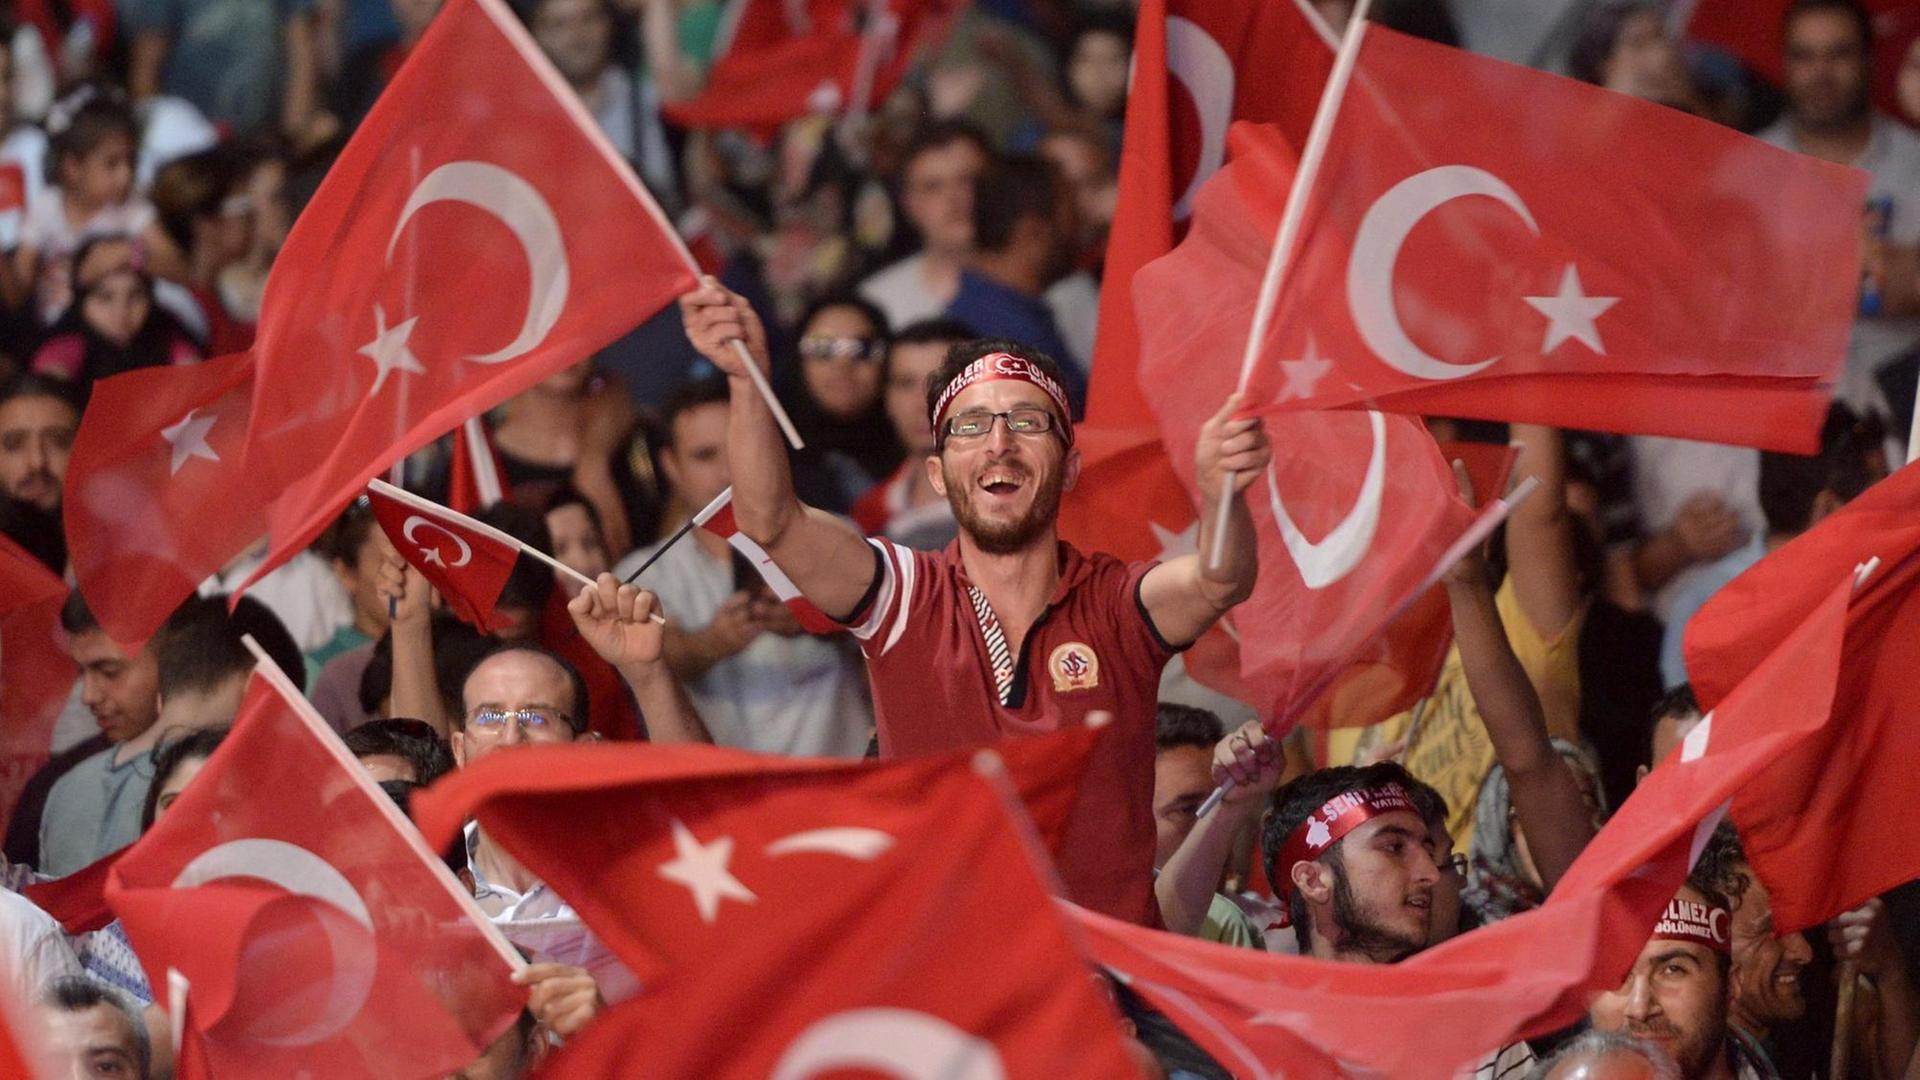 Sie sehen Anhänger von Präsident Erdogan, sie schwenken Fahnen.